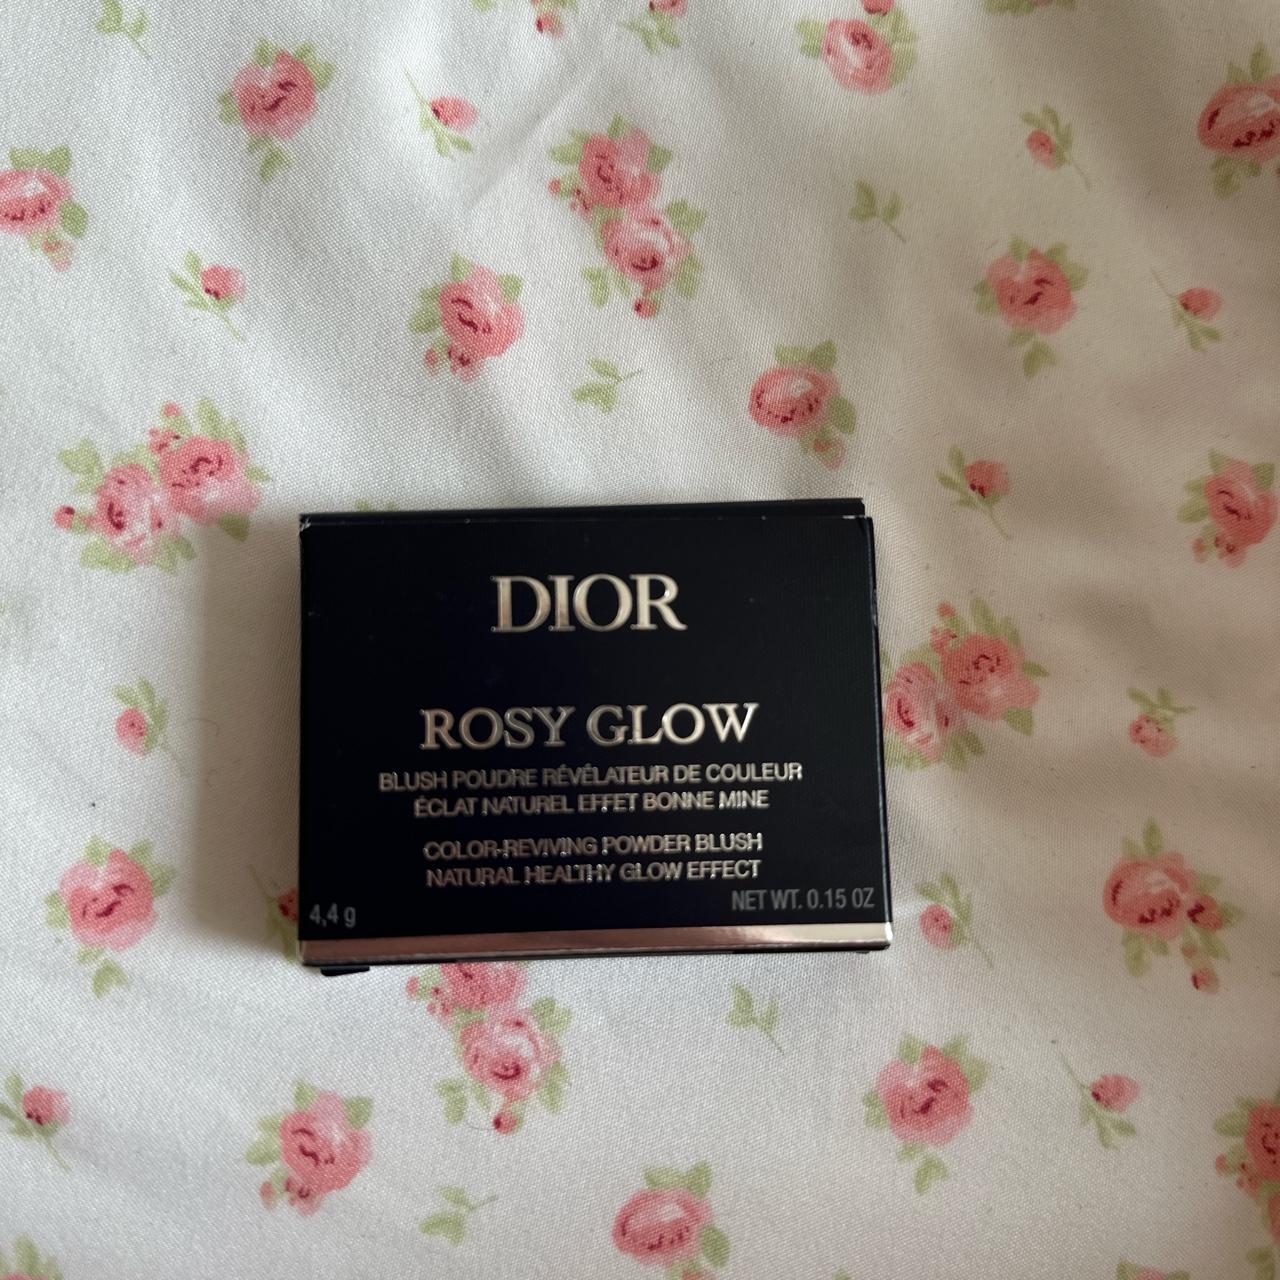 Dior Makeup